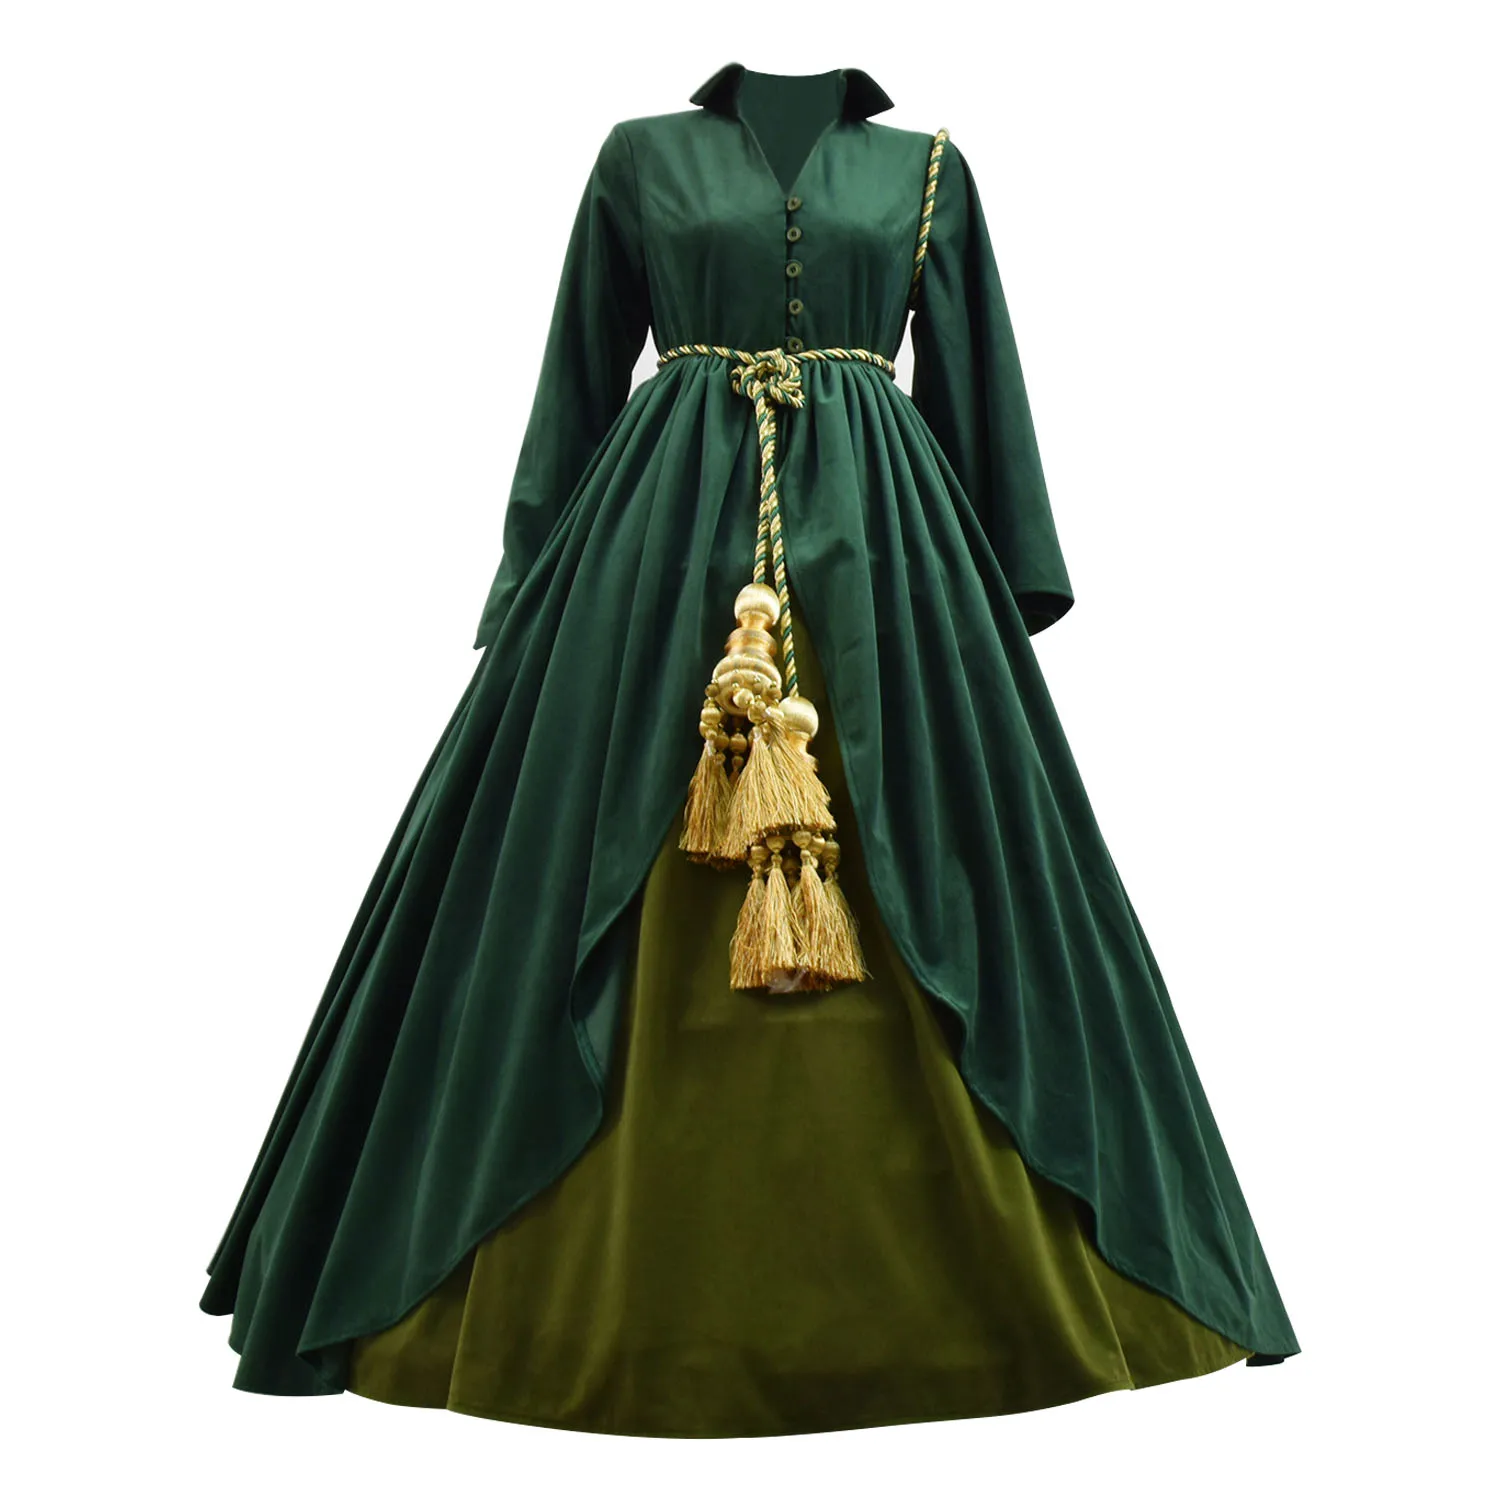 Cosdaddy Скарлетт О 'Хара зеленый костюм косплей занавес женские вечерние длинные платья